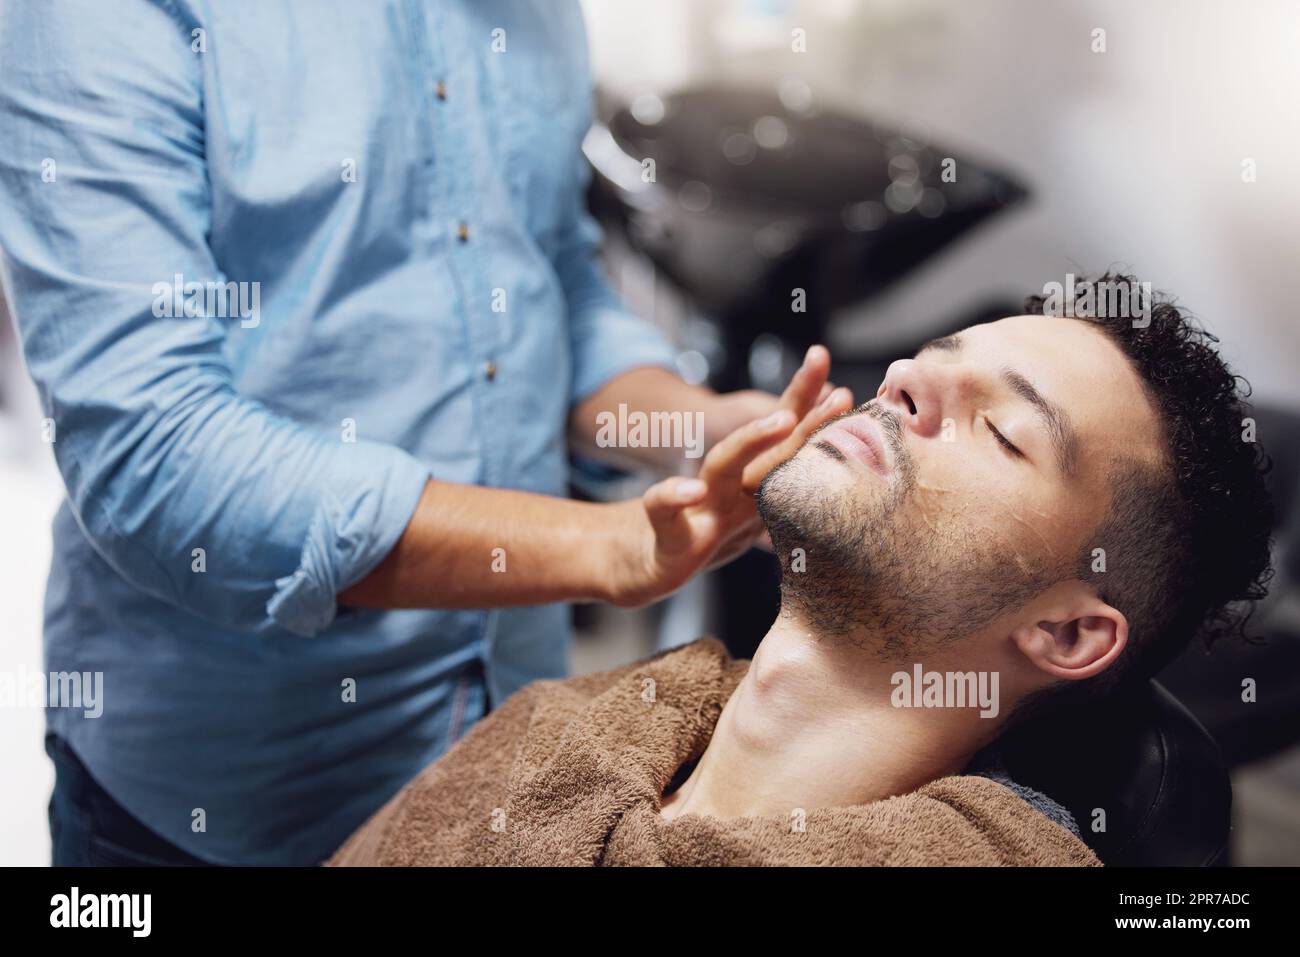 HES prêt à se faire dorloter. Un jeune homme charmant qui se prépare par un barbier. Banque D'Images